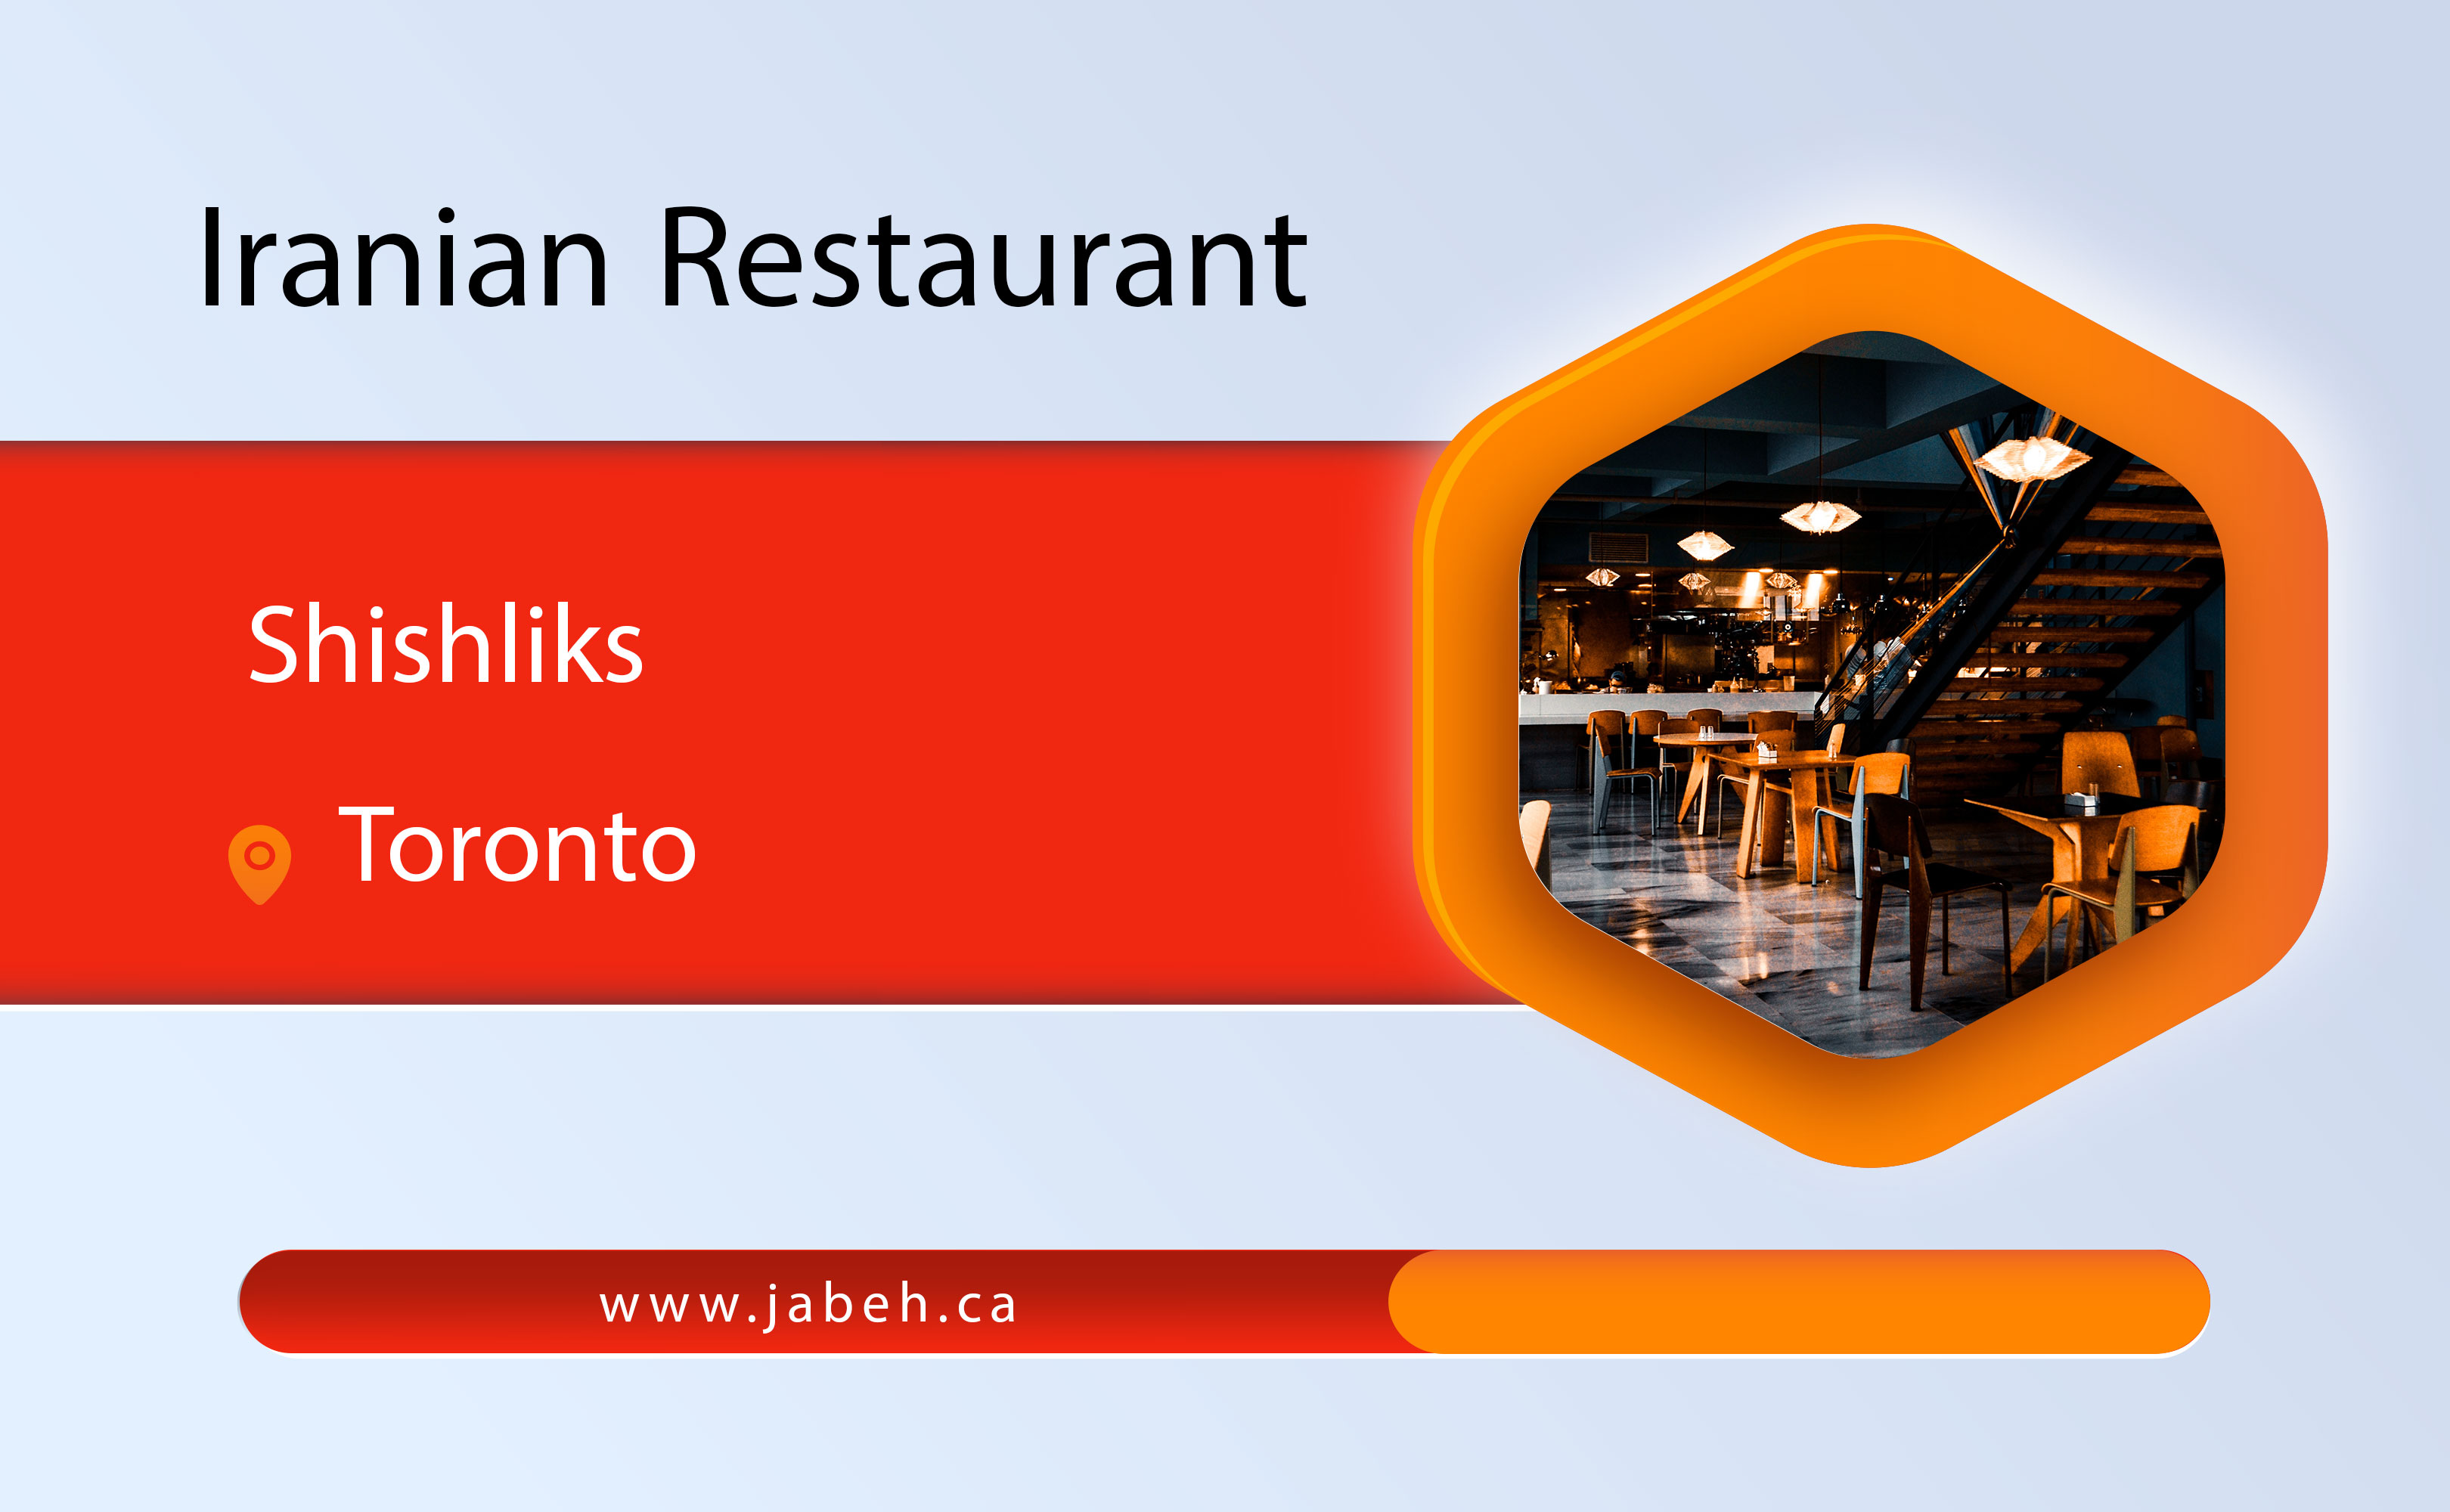 Irani Shishliks restaurant in Toronto